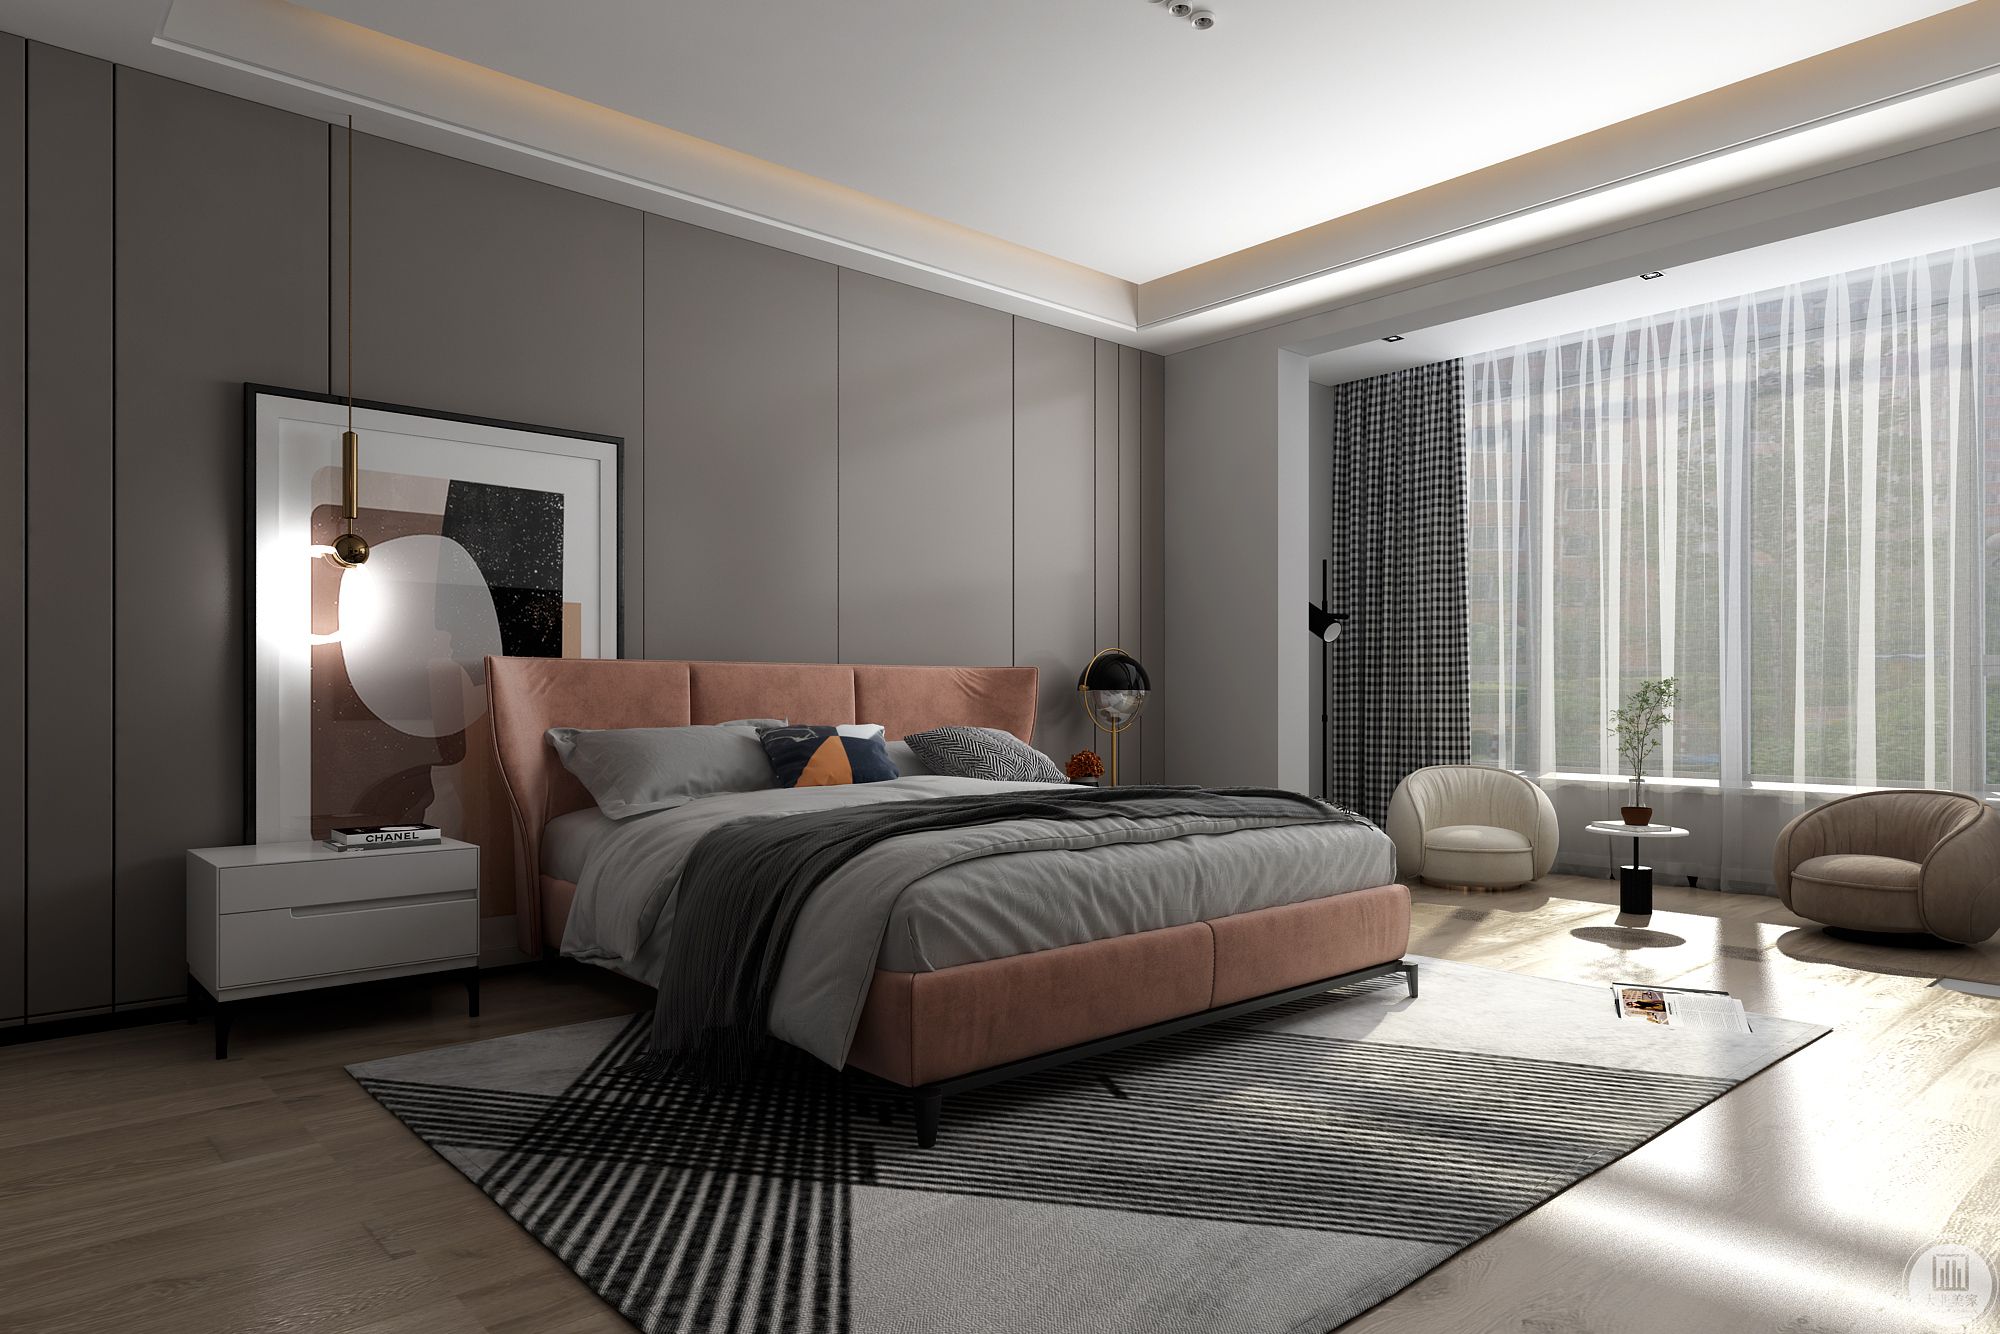 充分利用每一寸空间，让整个卧室更具整体感和高级感。